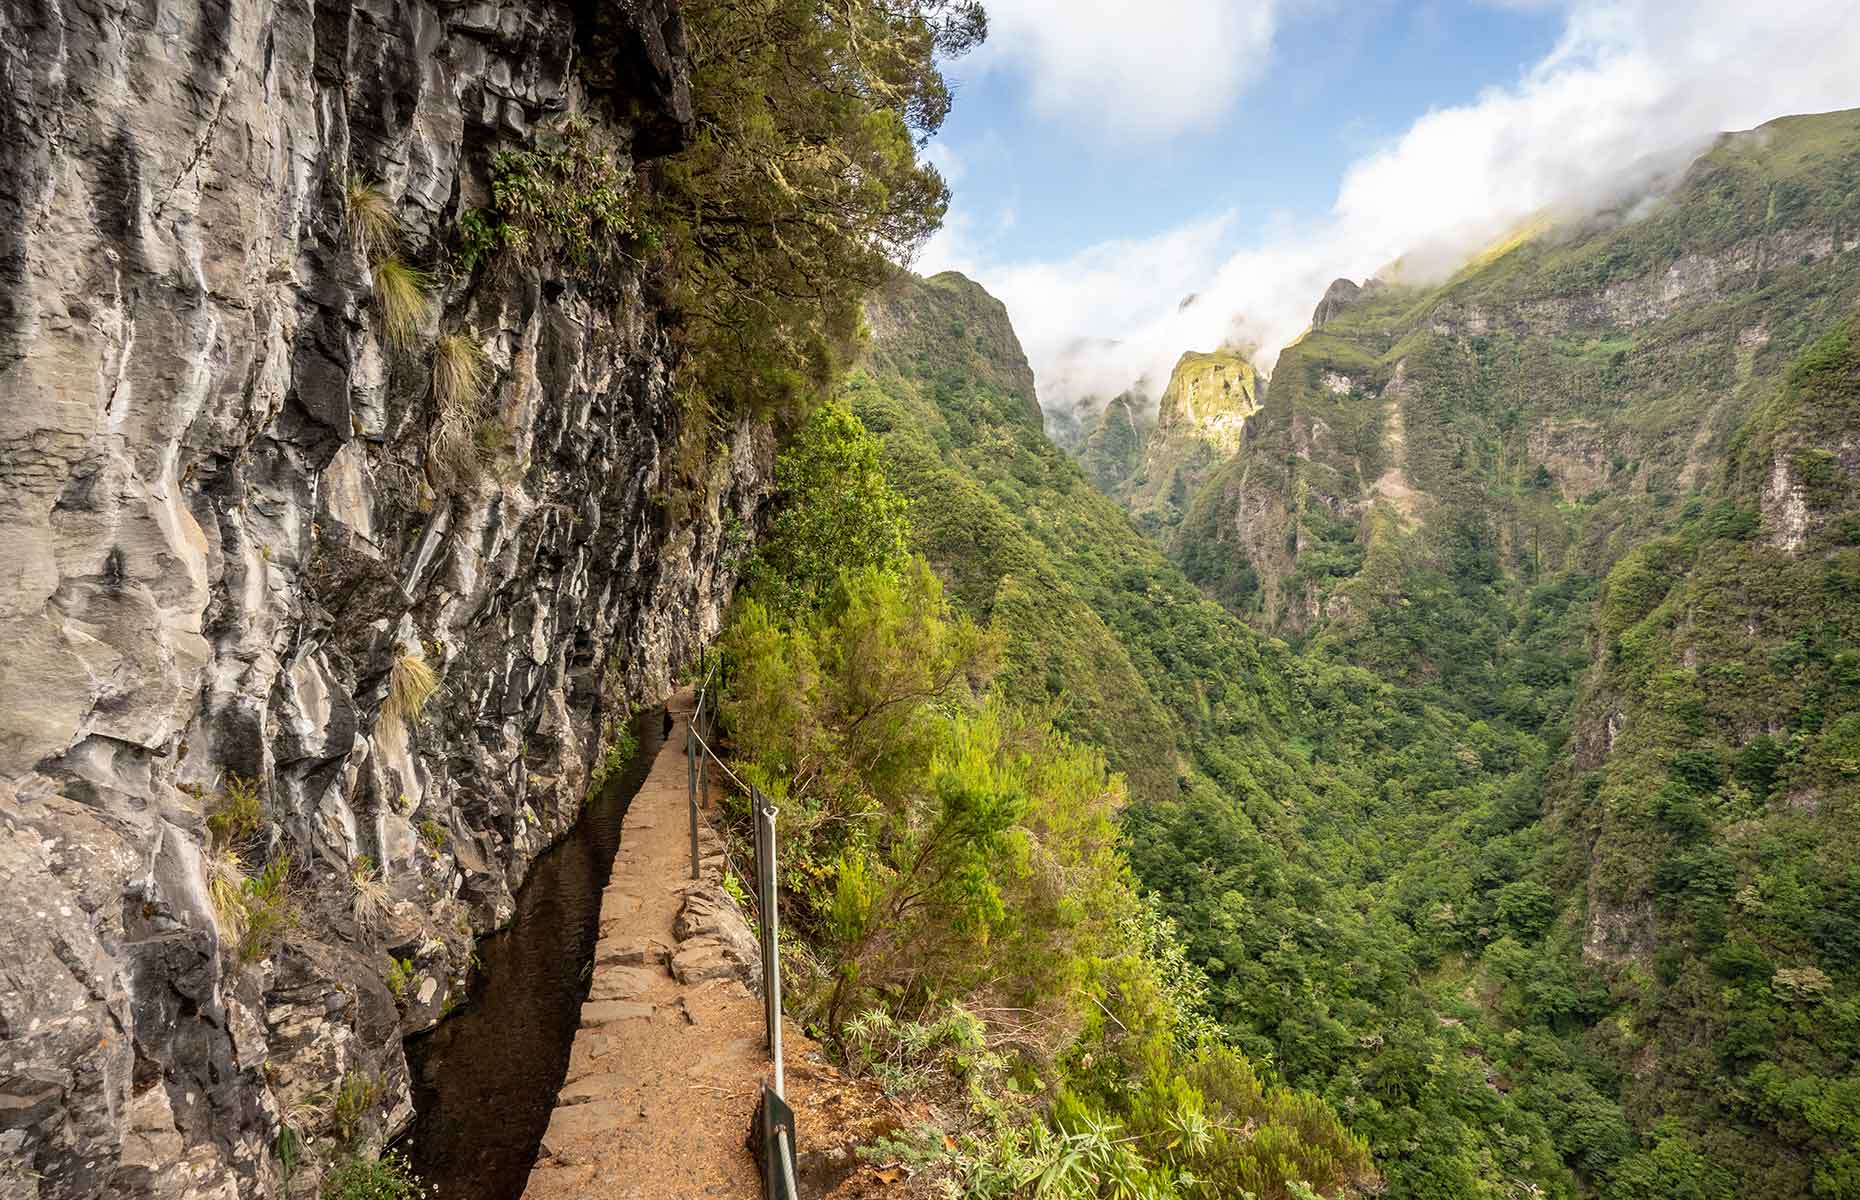 Caldeirão Verde hiking trail (Image: balajdav/Shutterstock)